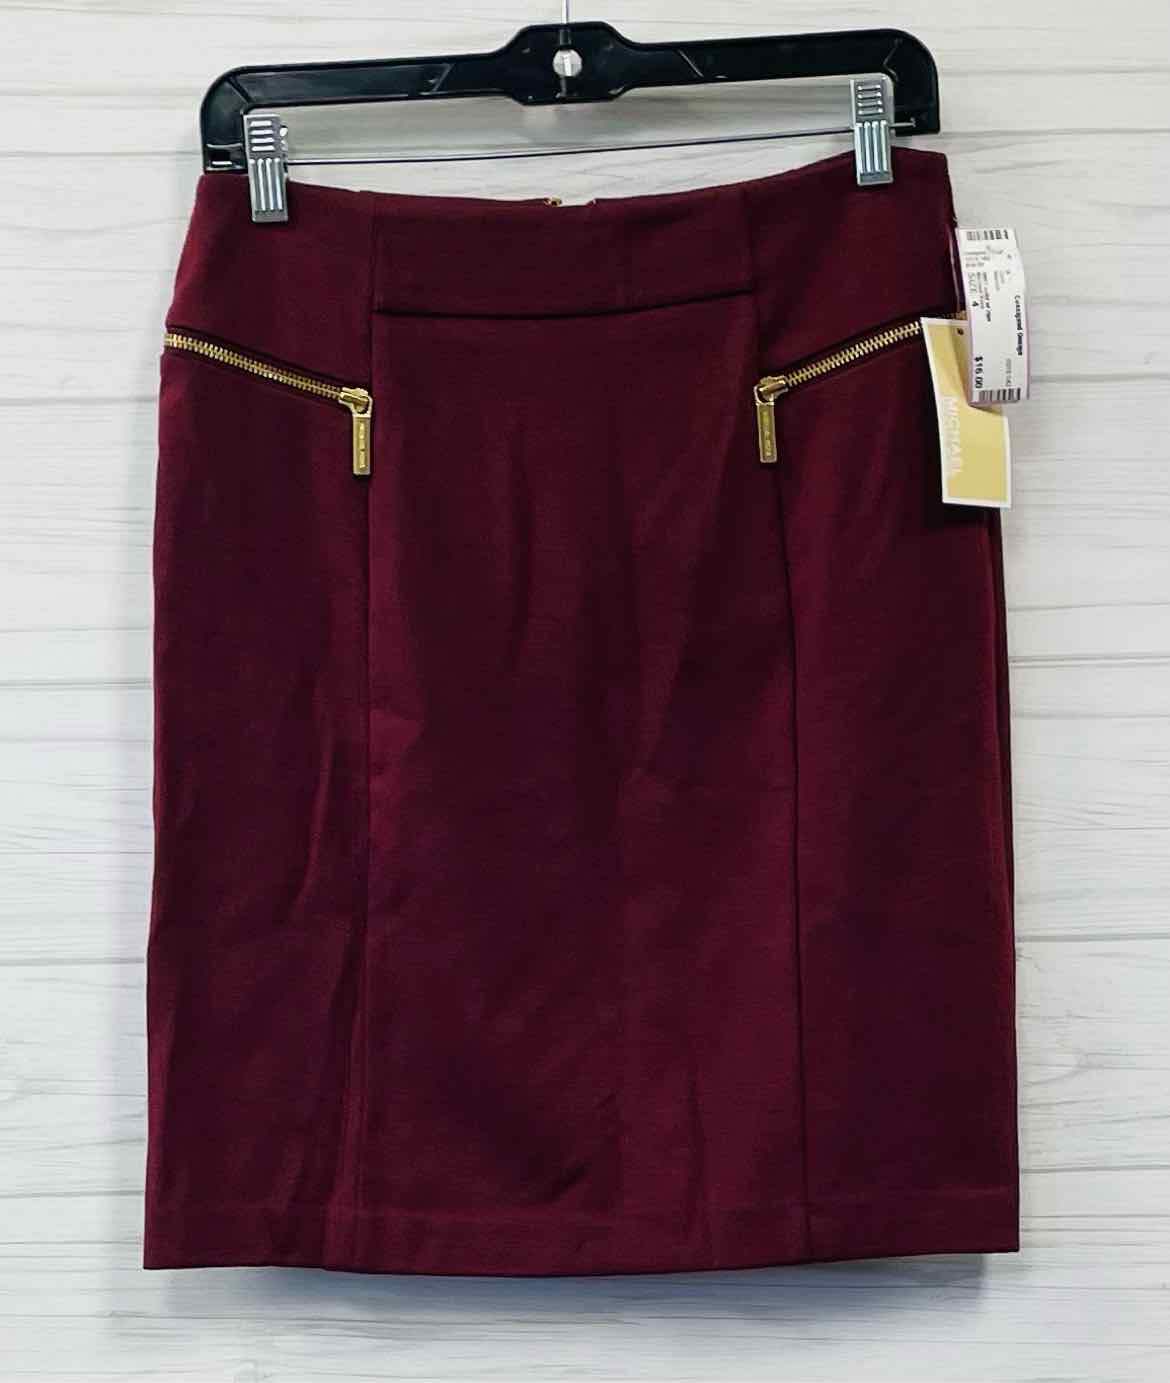 Size 4 Michael Kors Skirt